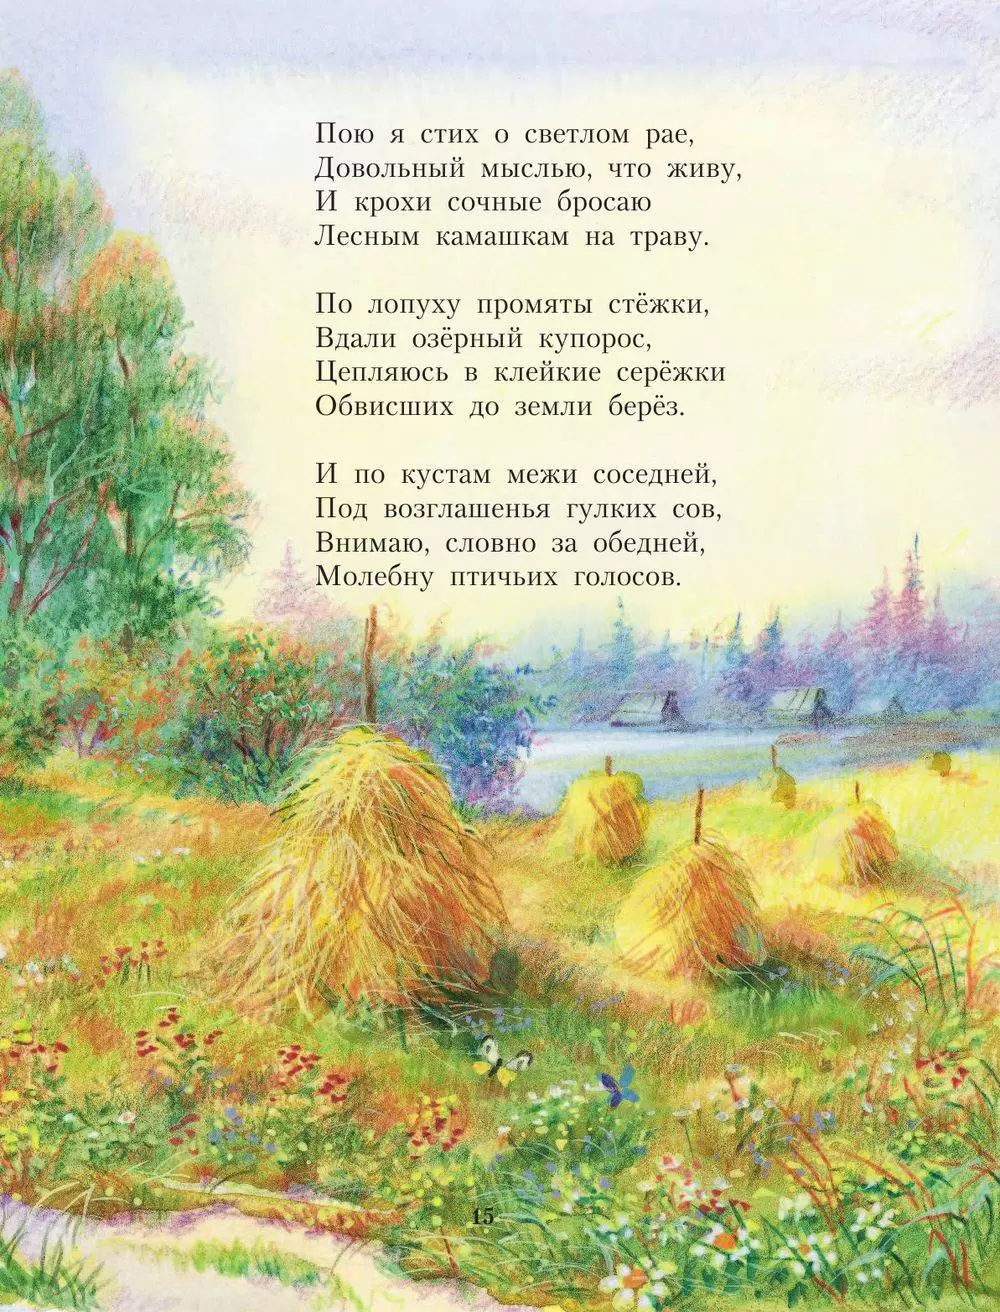 Поздравления на белорусском языке